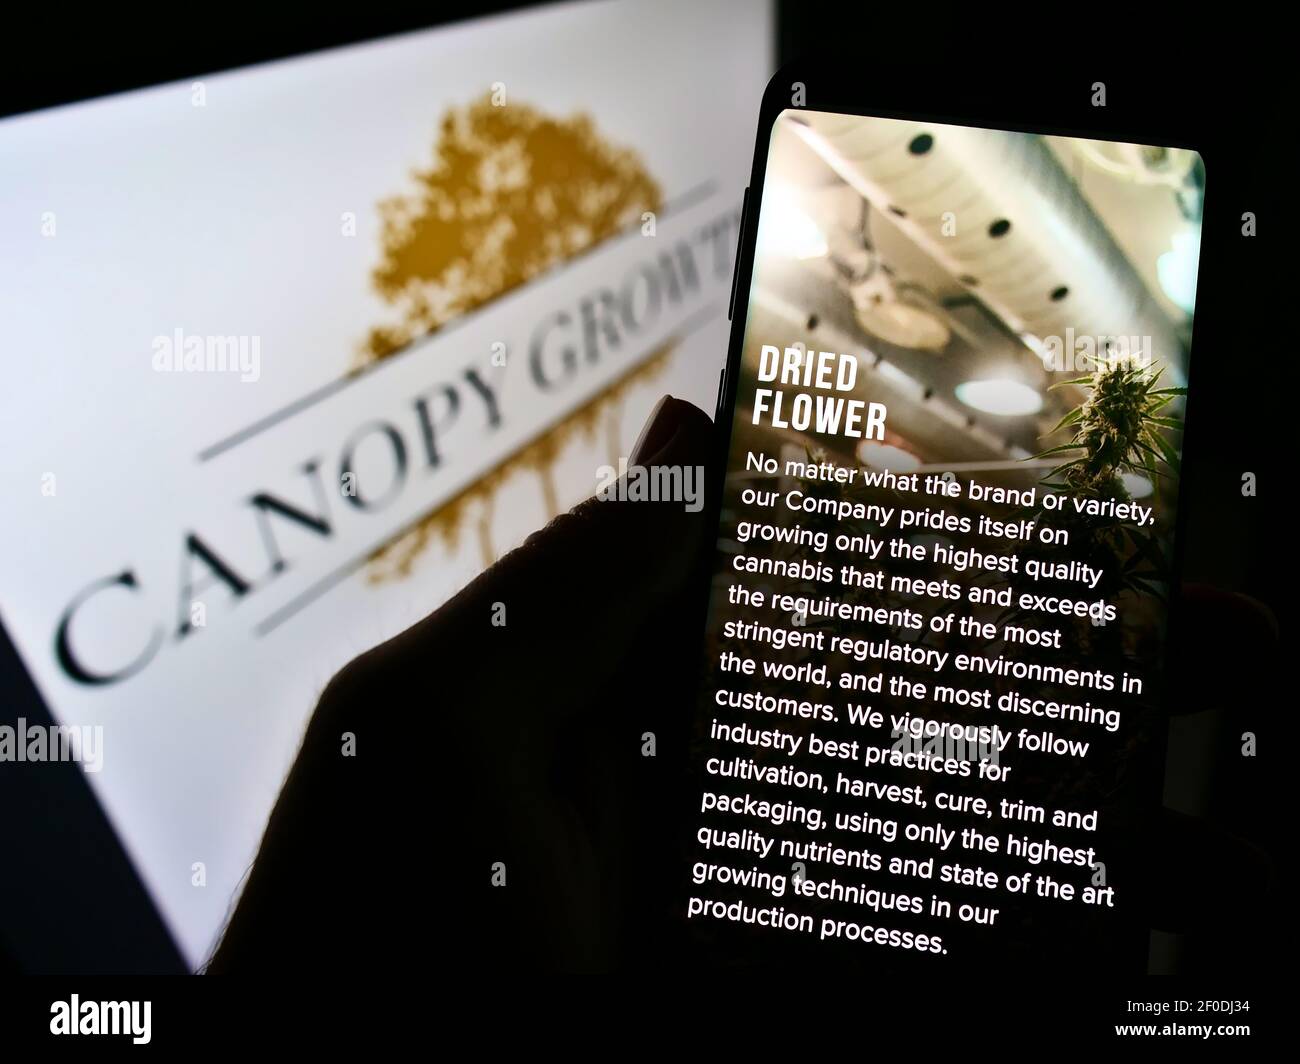 Persona che tiene il telefono mobile con il sito web della Canopy Growth Corporation Canadian cannabis Company su schermo con il logo. Mettere a fuoco il centro del display del telefono. Foto Stock